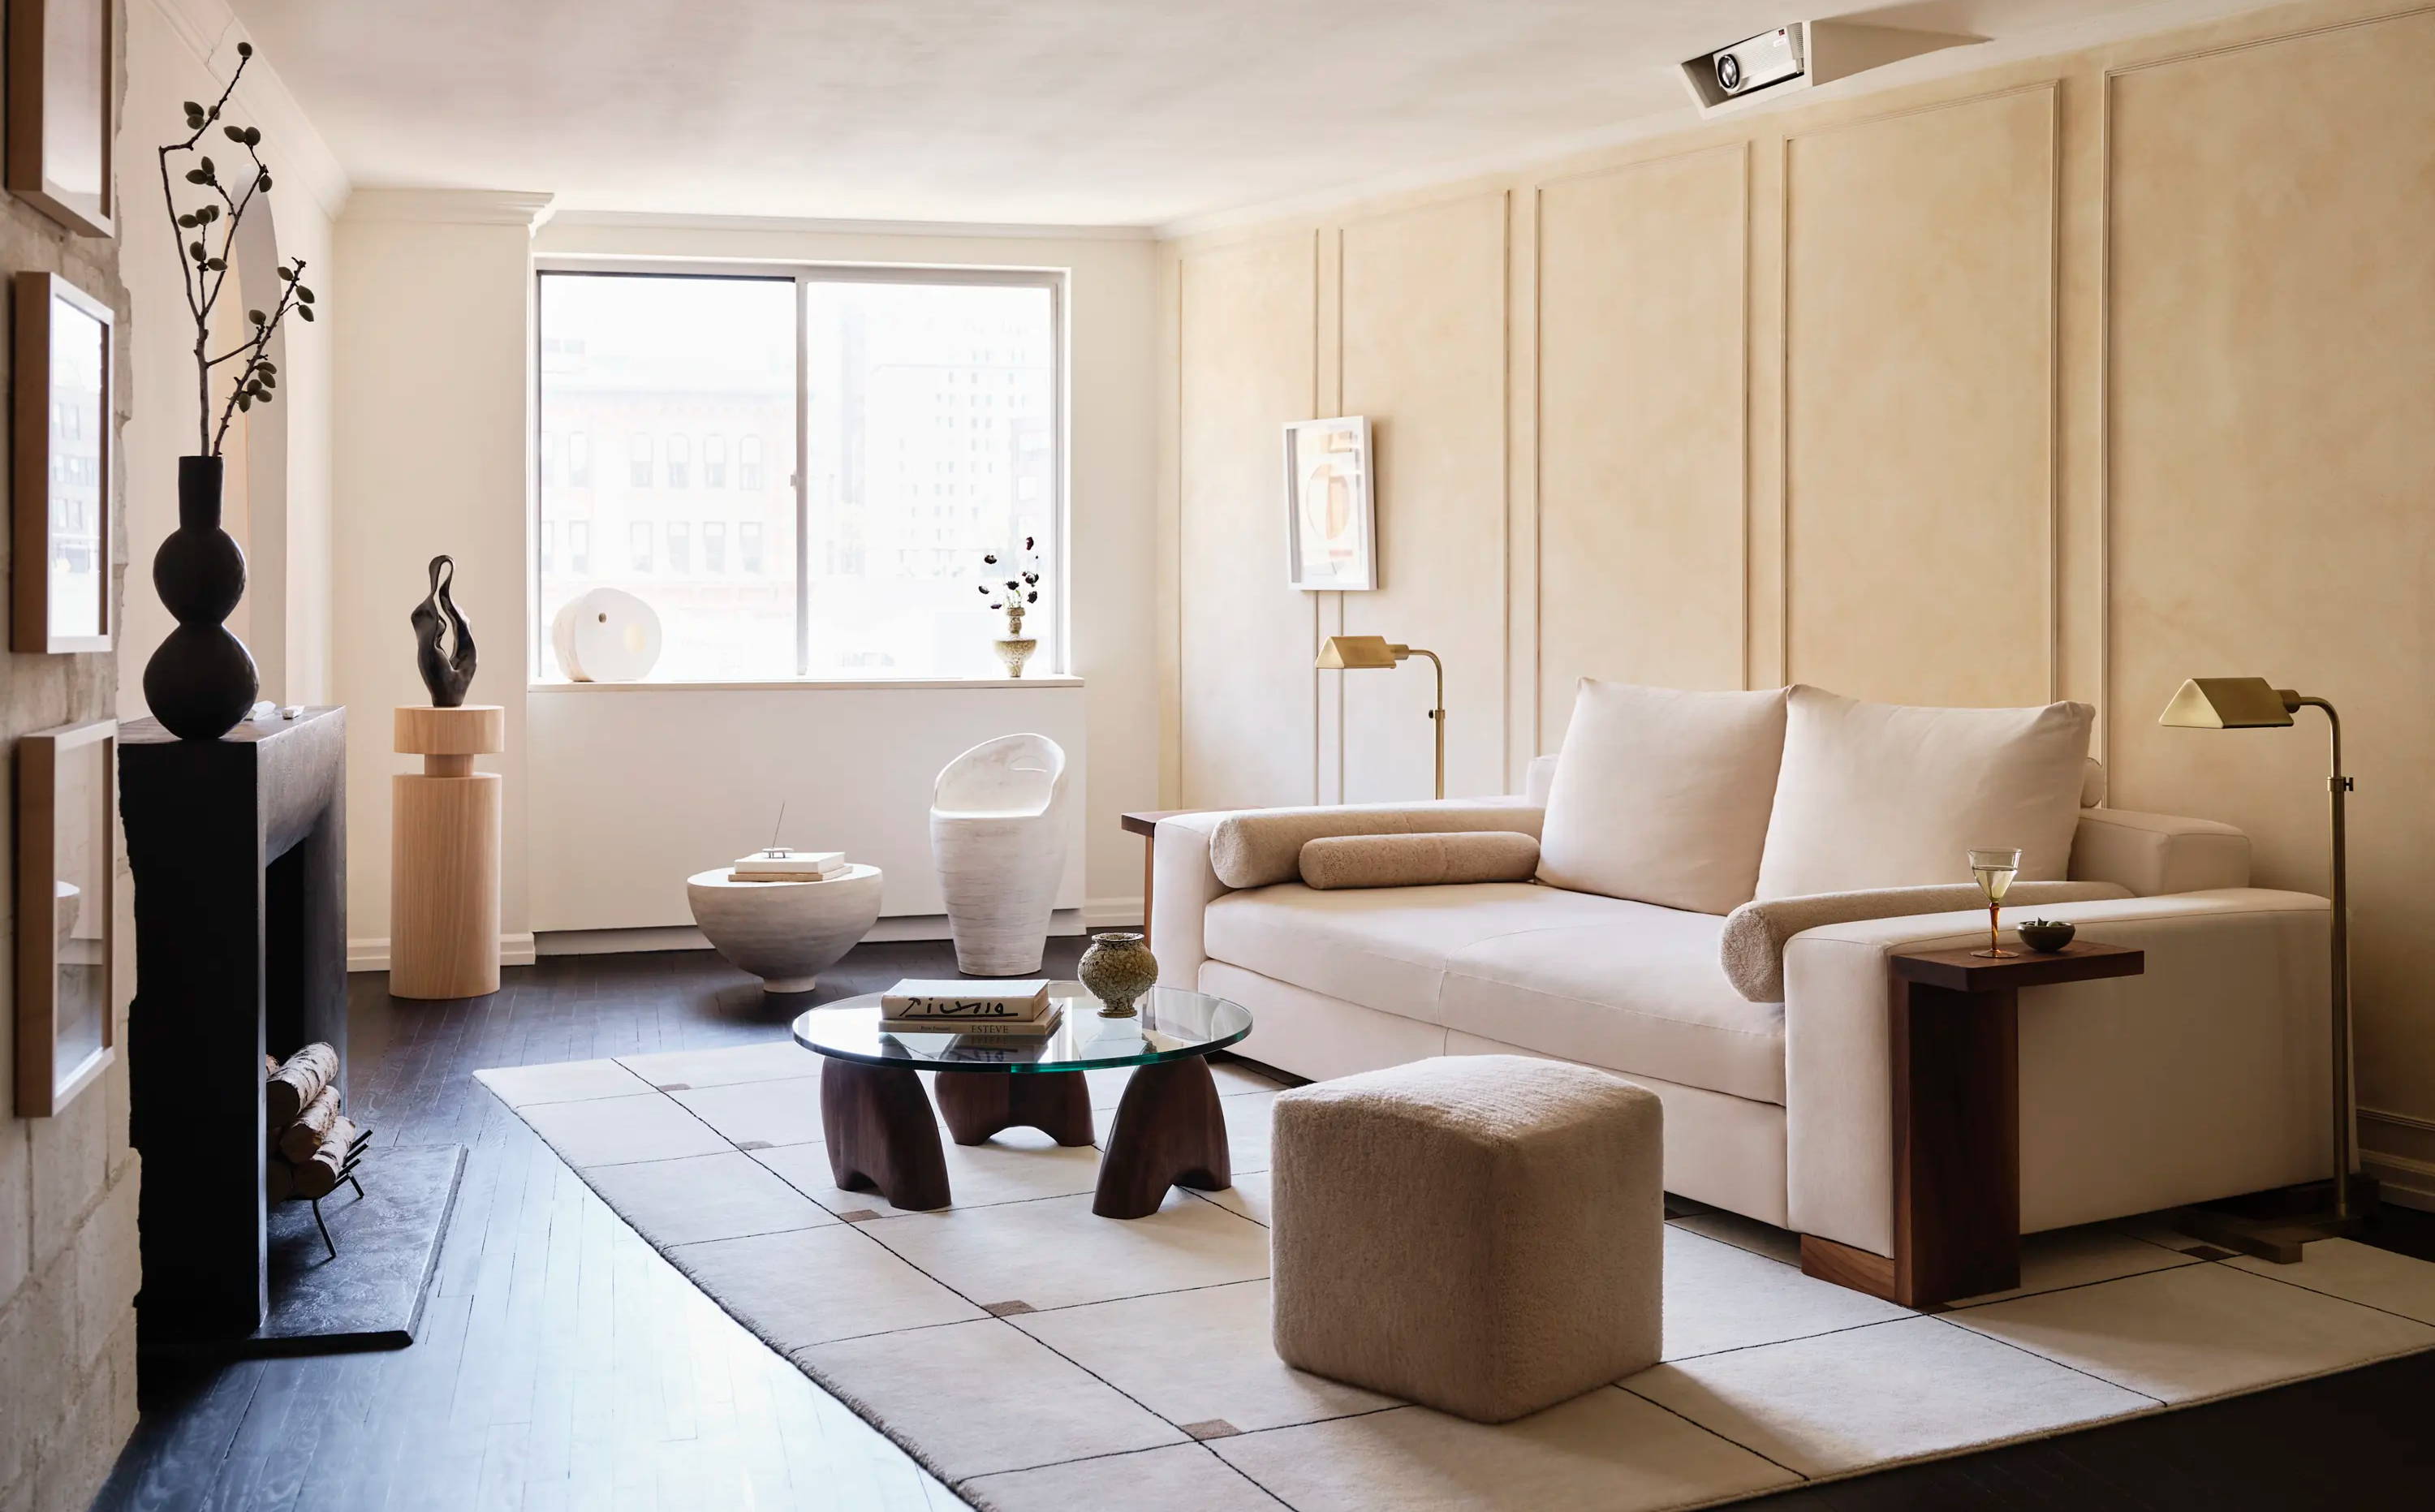 Artful Home, Sculptural Furniture, Interior Design Unique Living Room, New York City Unique Apartment Design